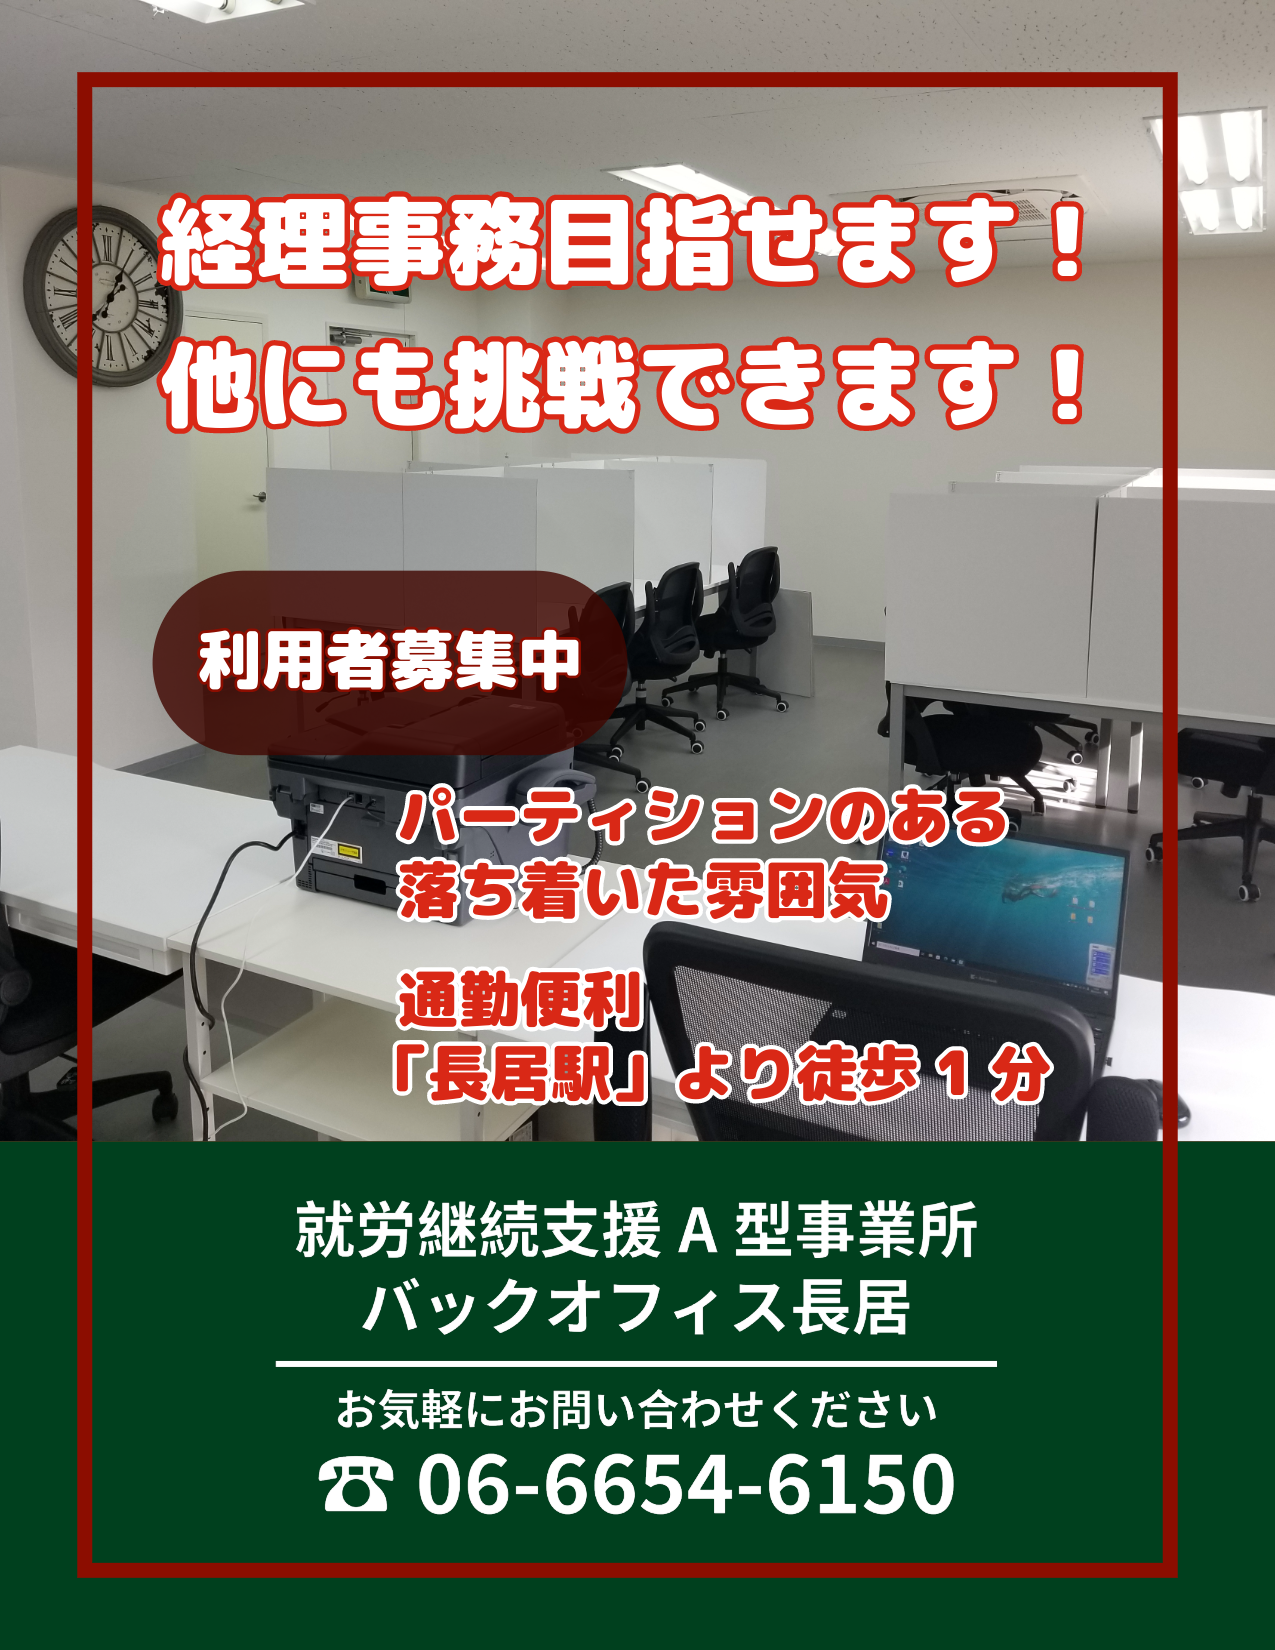 大阪市住吉区、長居公園すぐそばの就労継続支援Ａ型事業所のバックオフィス長居の利用者求人のページです